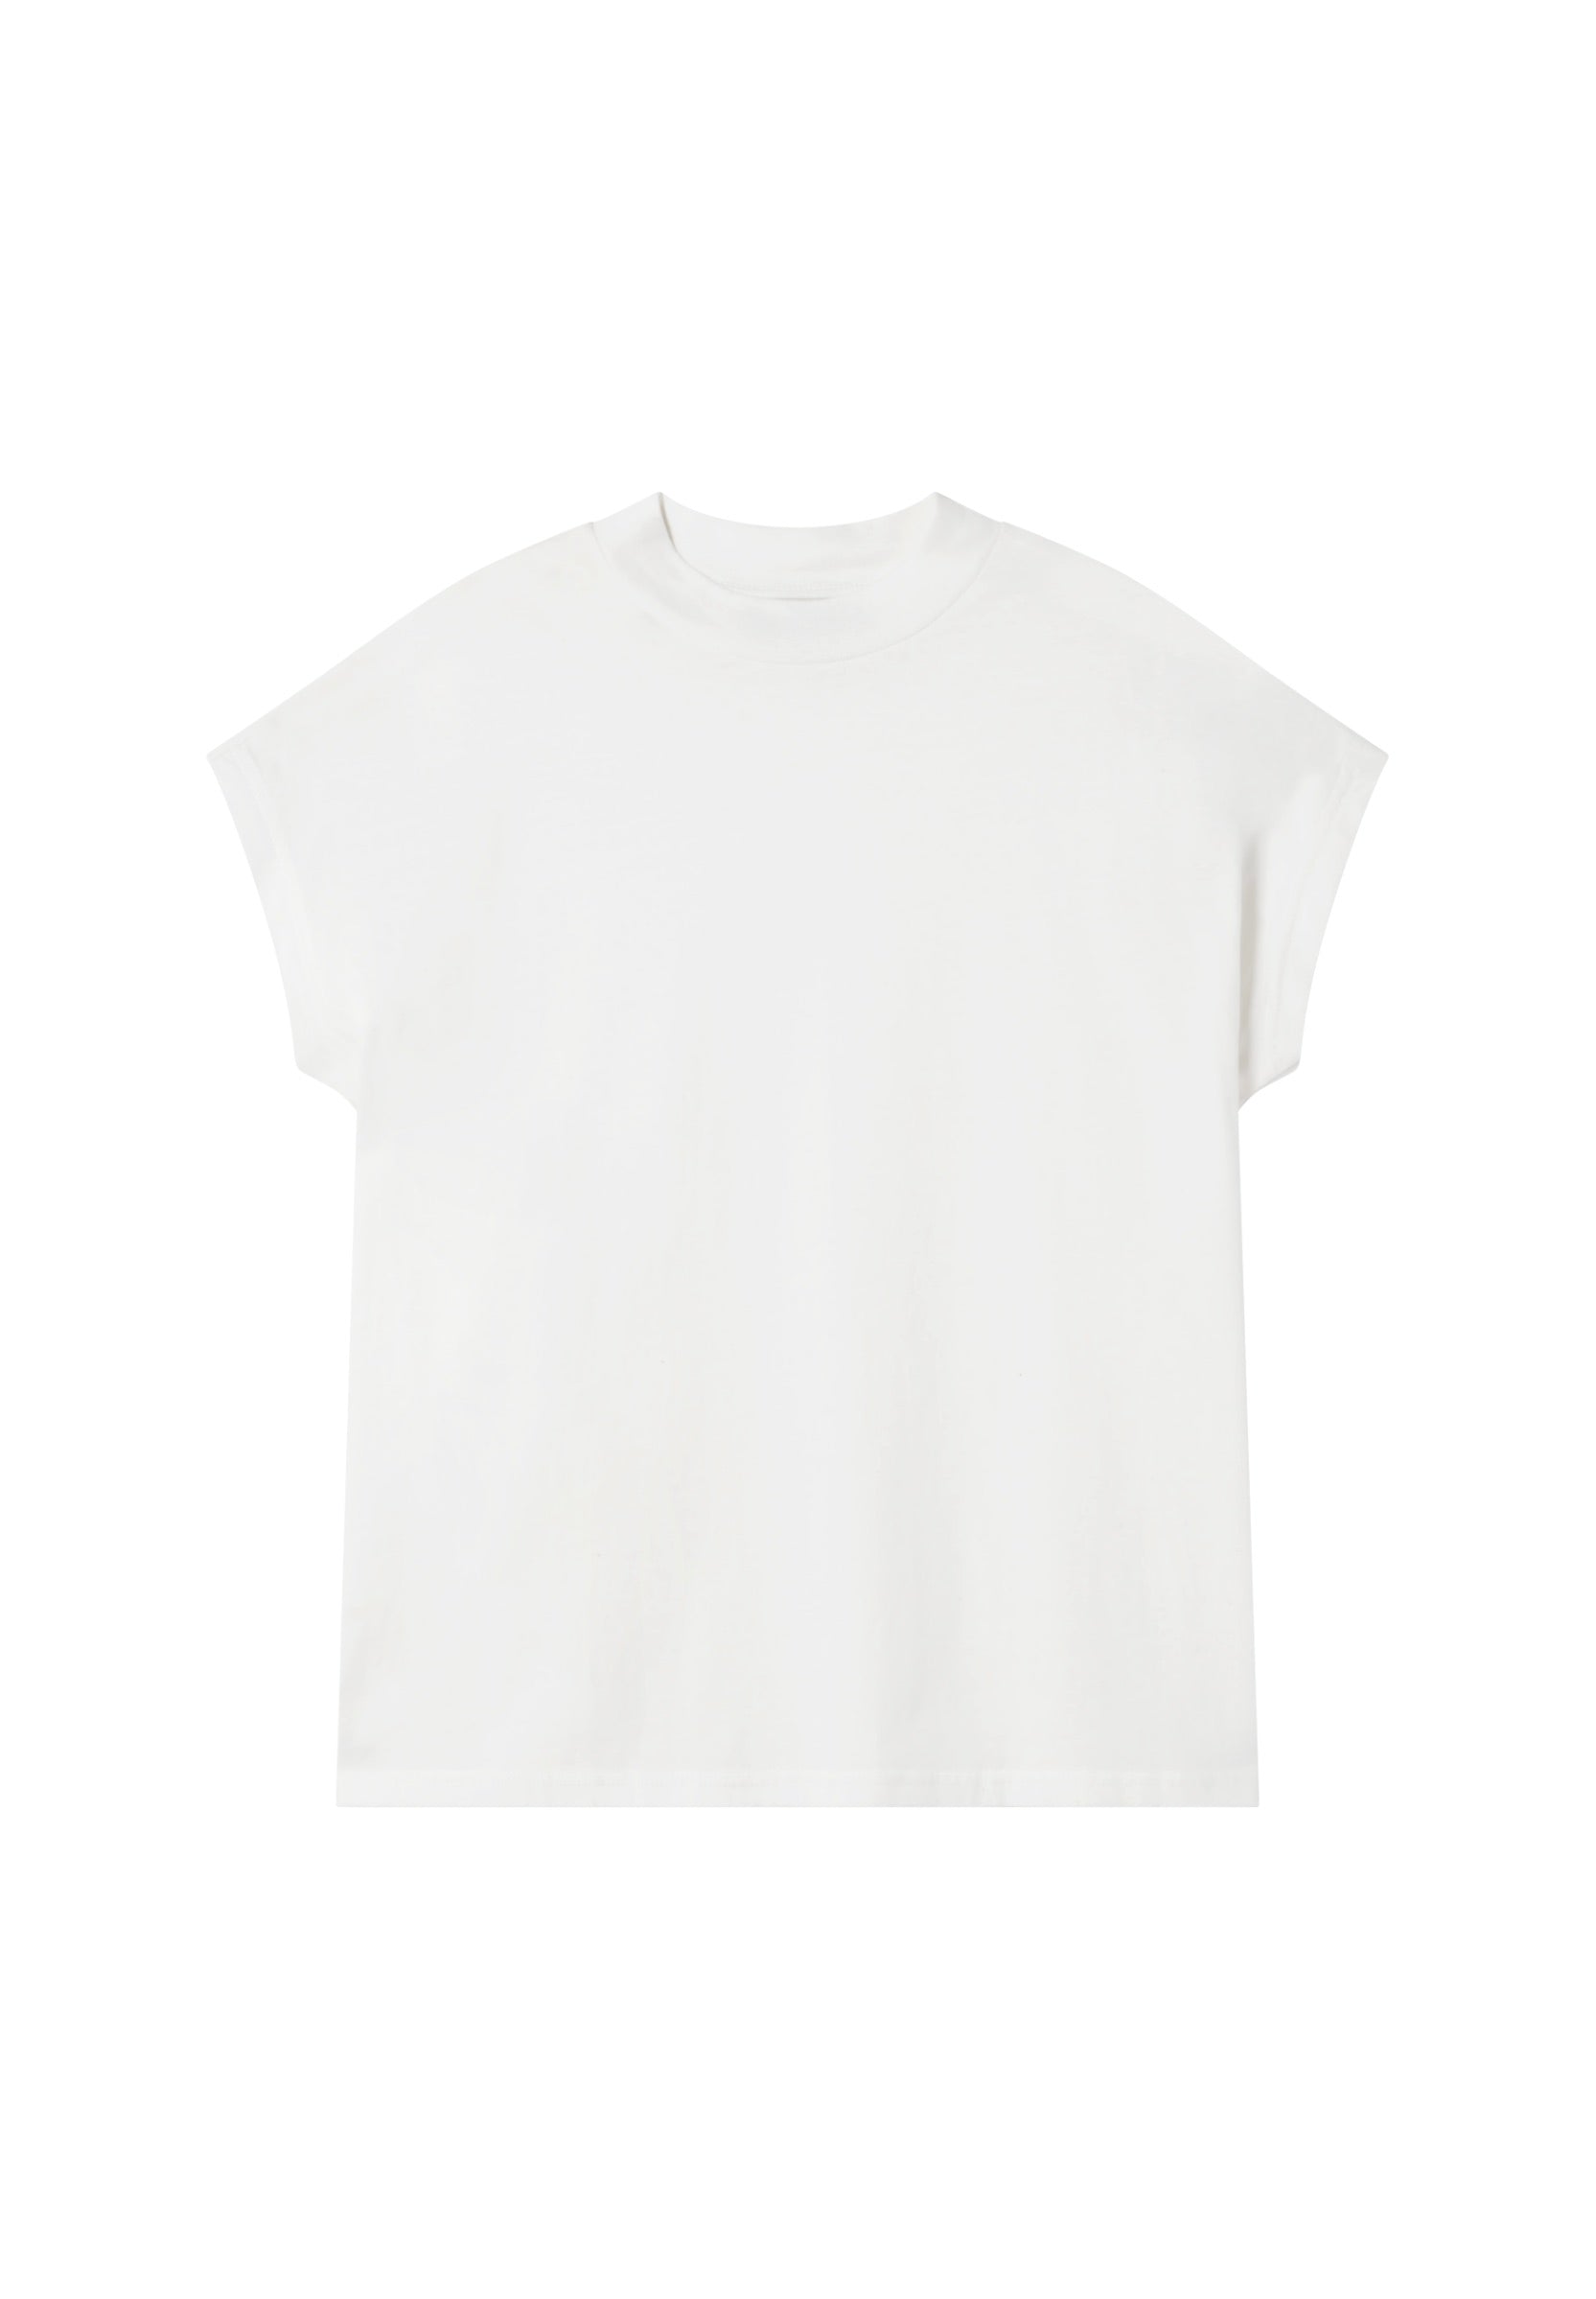 t-shirt volta white